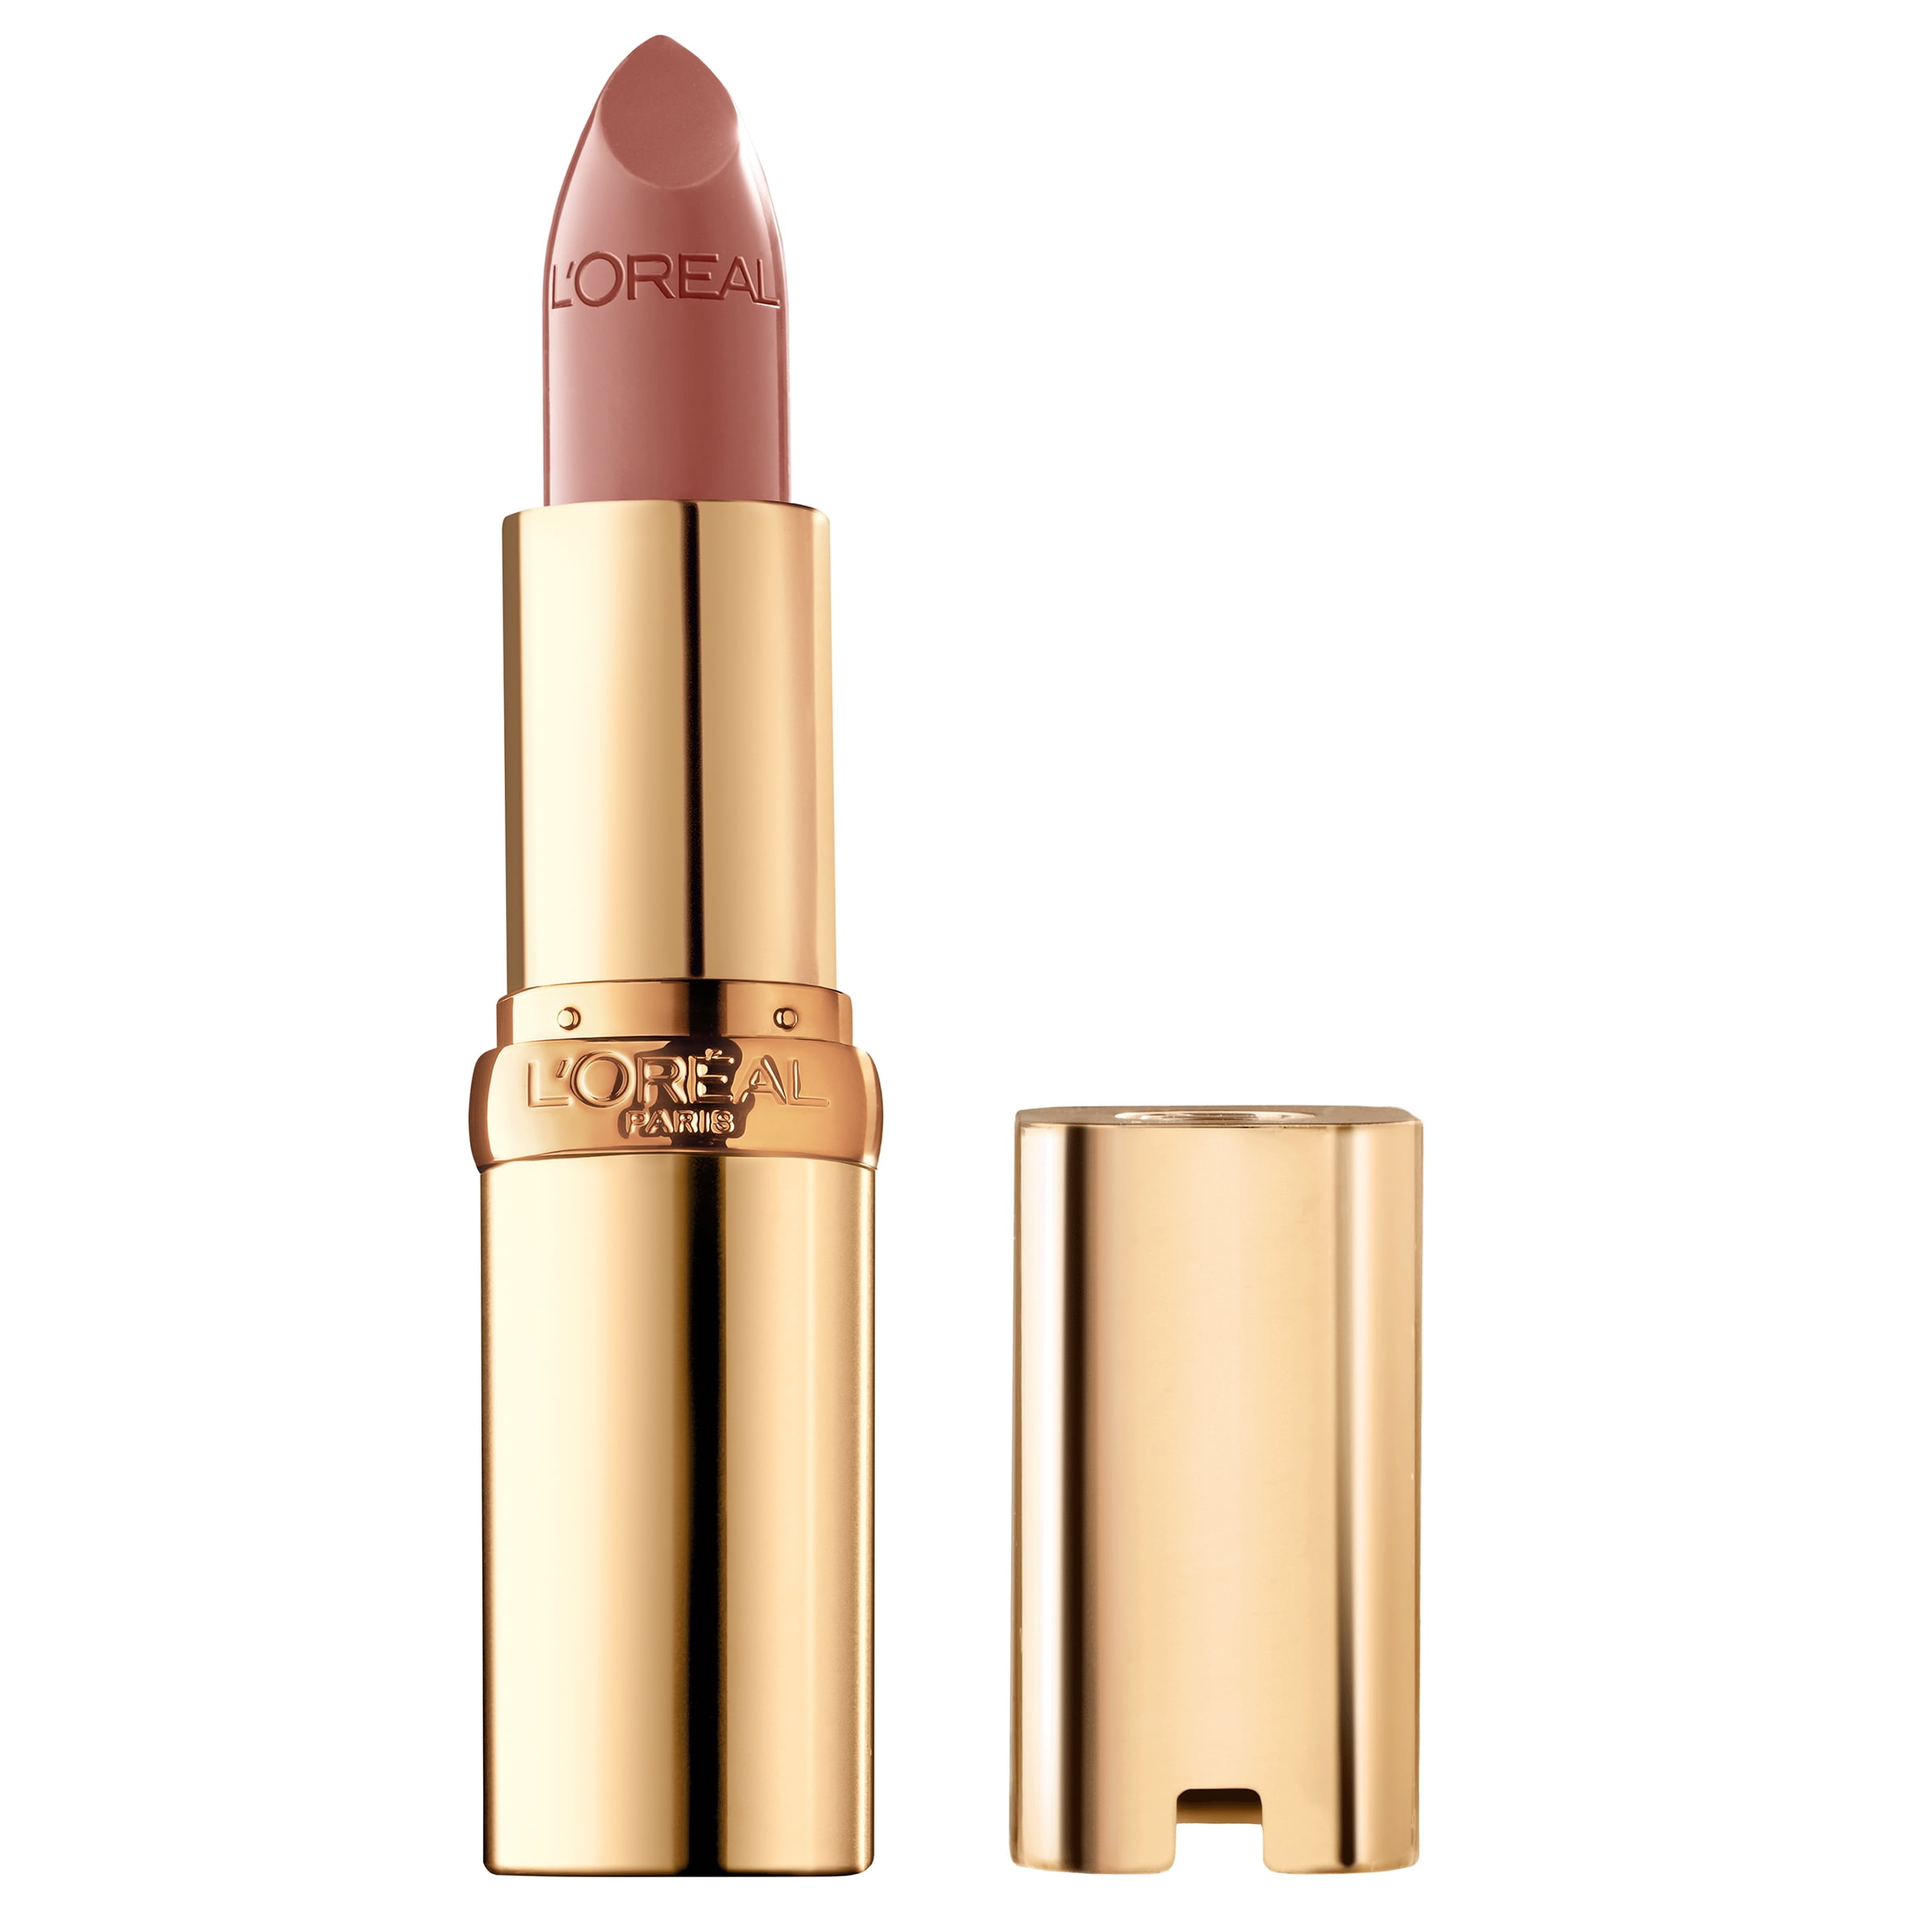 L'Oreal Paris Colour Riche Original Satin Lipstick for Moisturized Lips, Fairest Nude, 0.13 oz